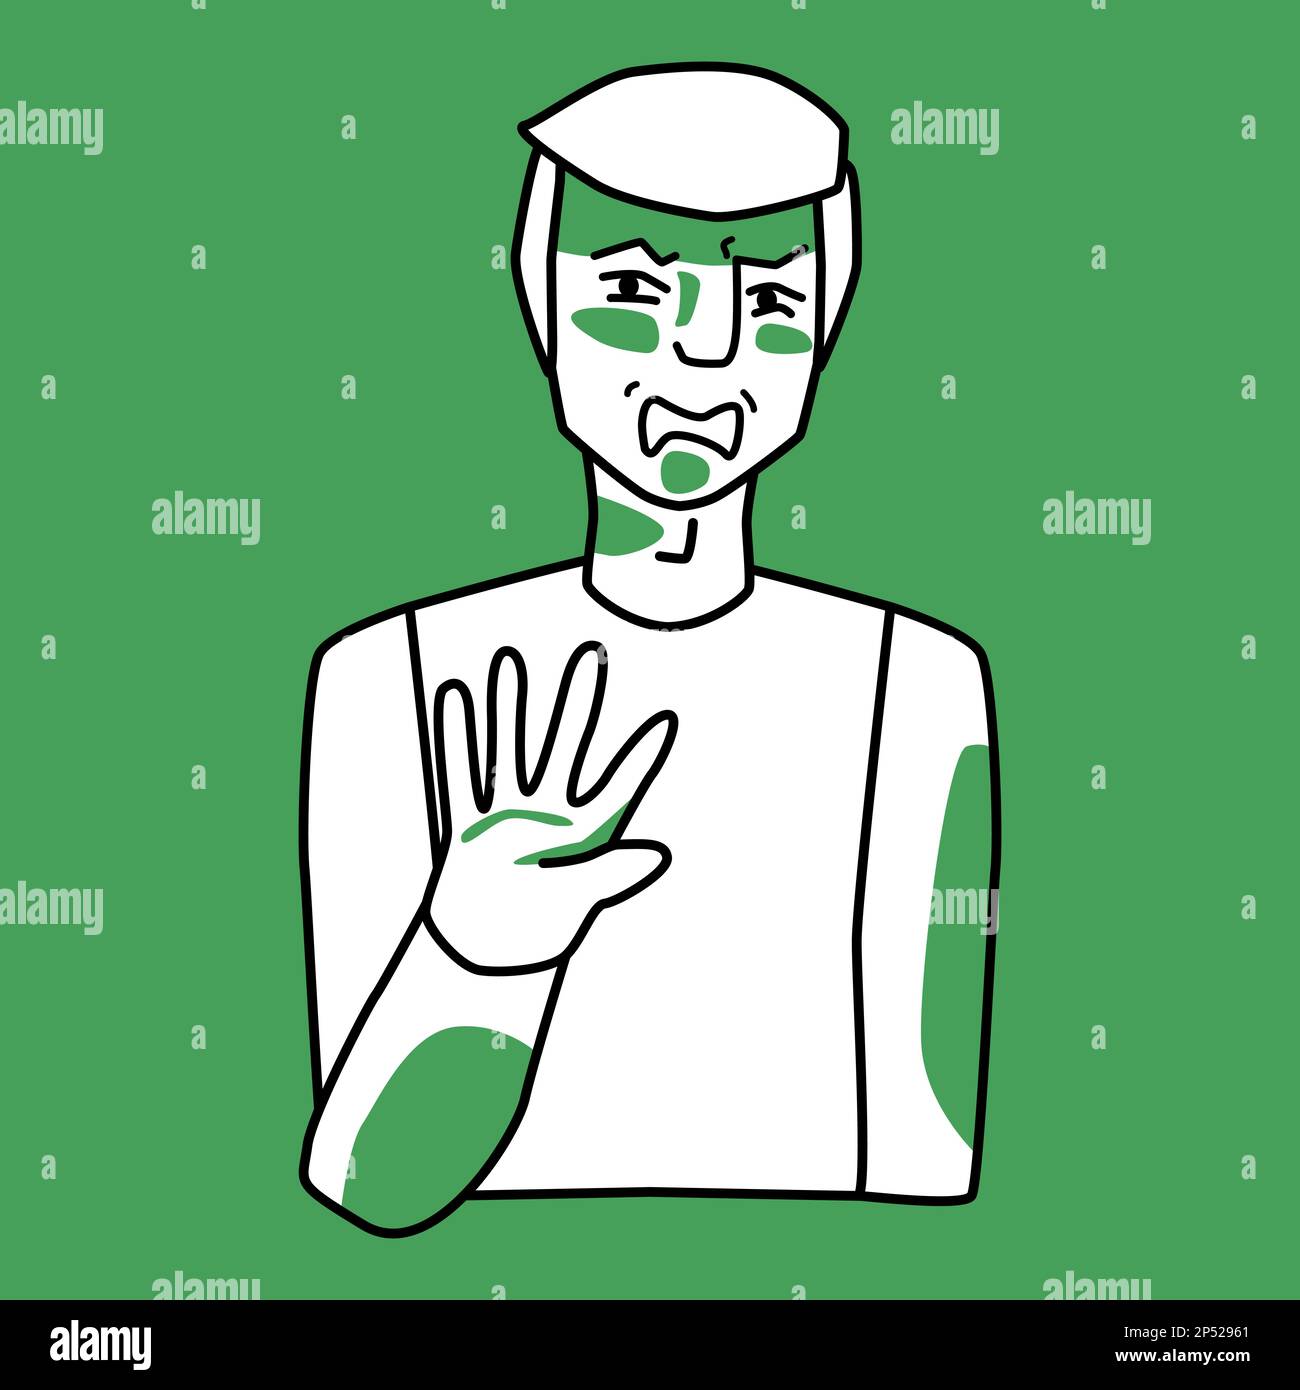 Männlicher Erwachsener mit Emotionen von Ekel, grün und weiß. Ein Mann mit blondem Haar schützt sich mit seiner Hand. Strichzeichnungen, handgezeichnet, im Skizzenstil, halb Stock Vektor